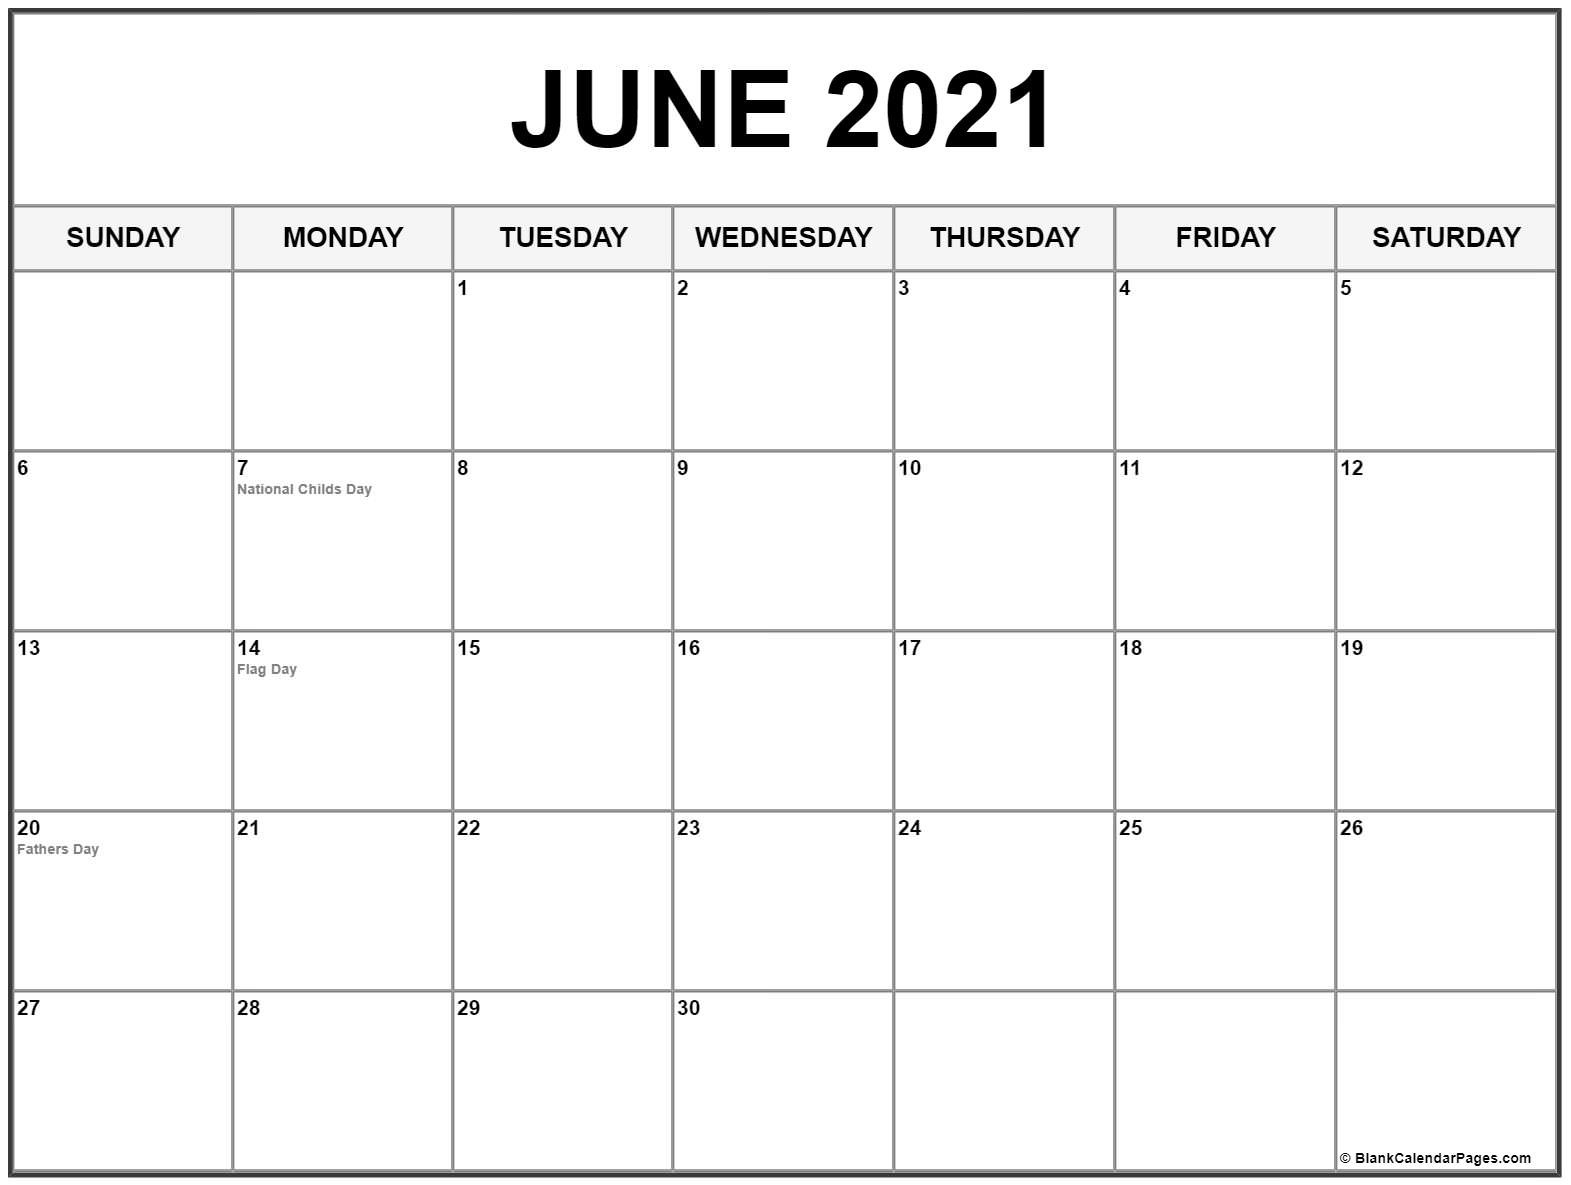 June 2021 Calendar With Holidays-June 2021 Calendar List Template